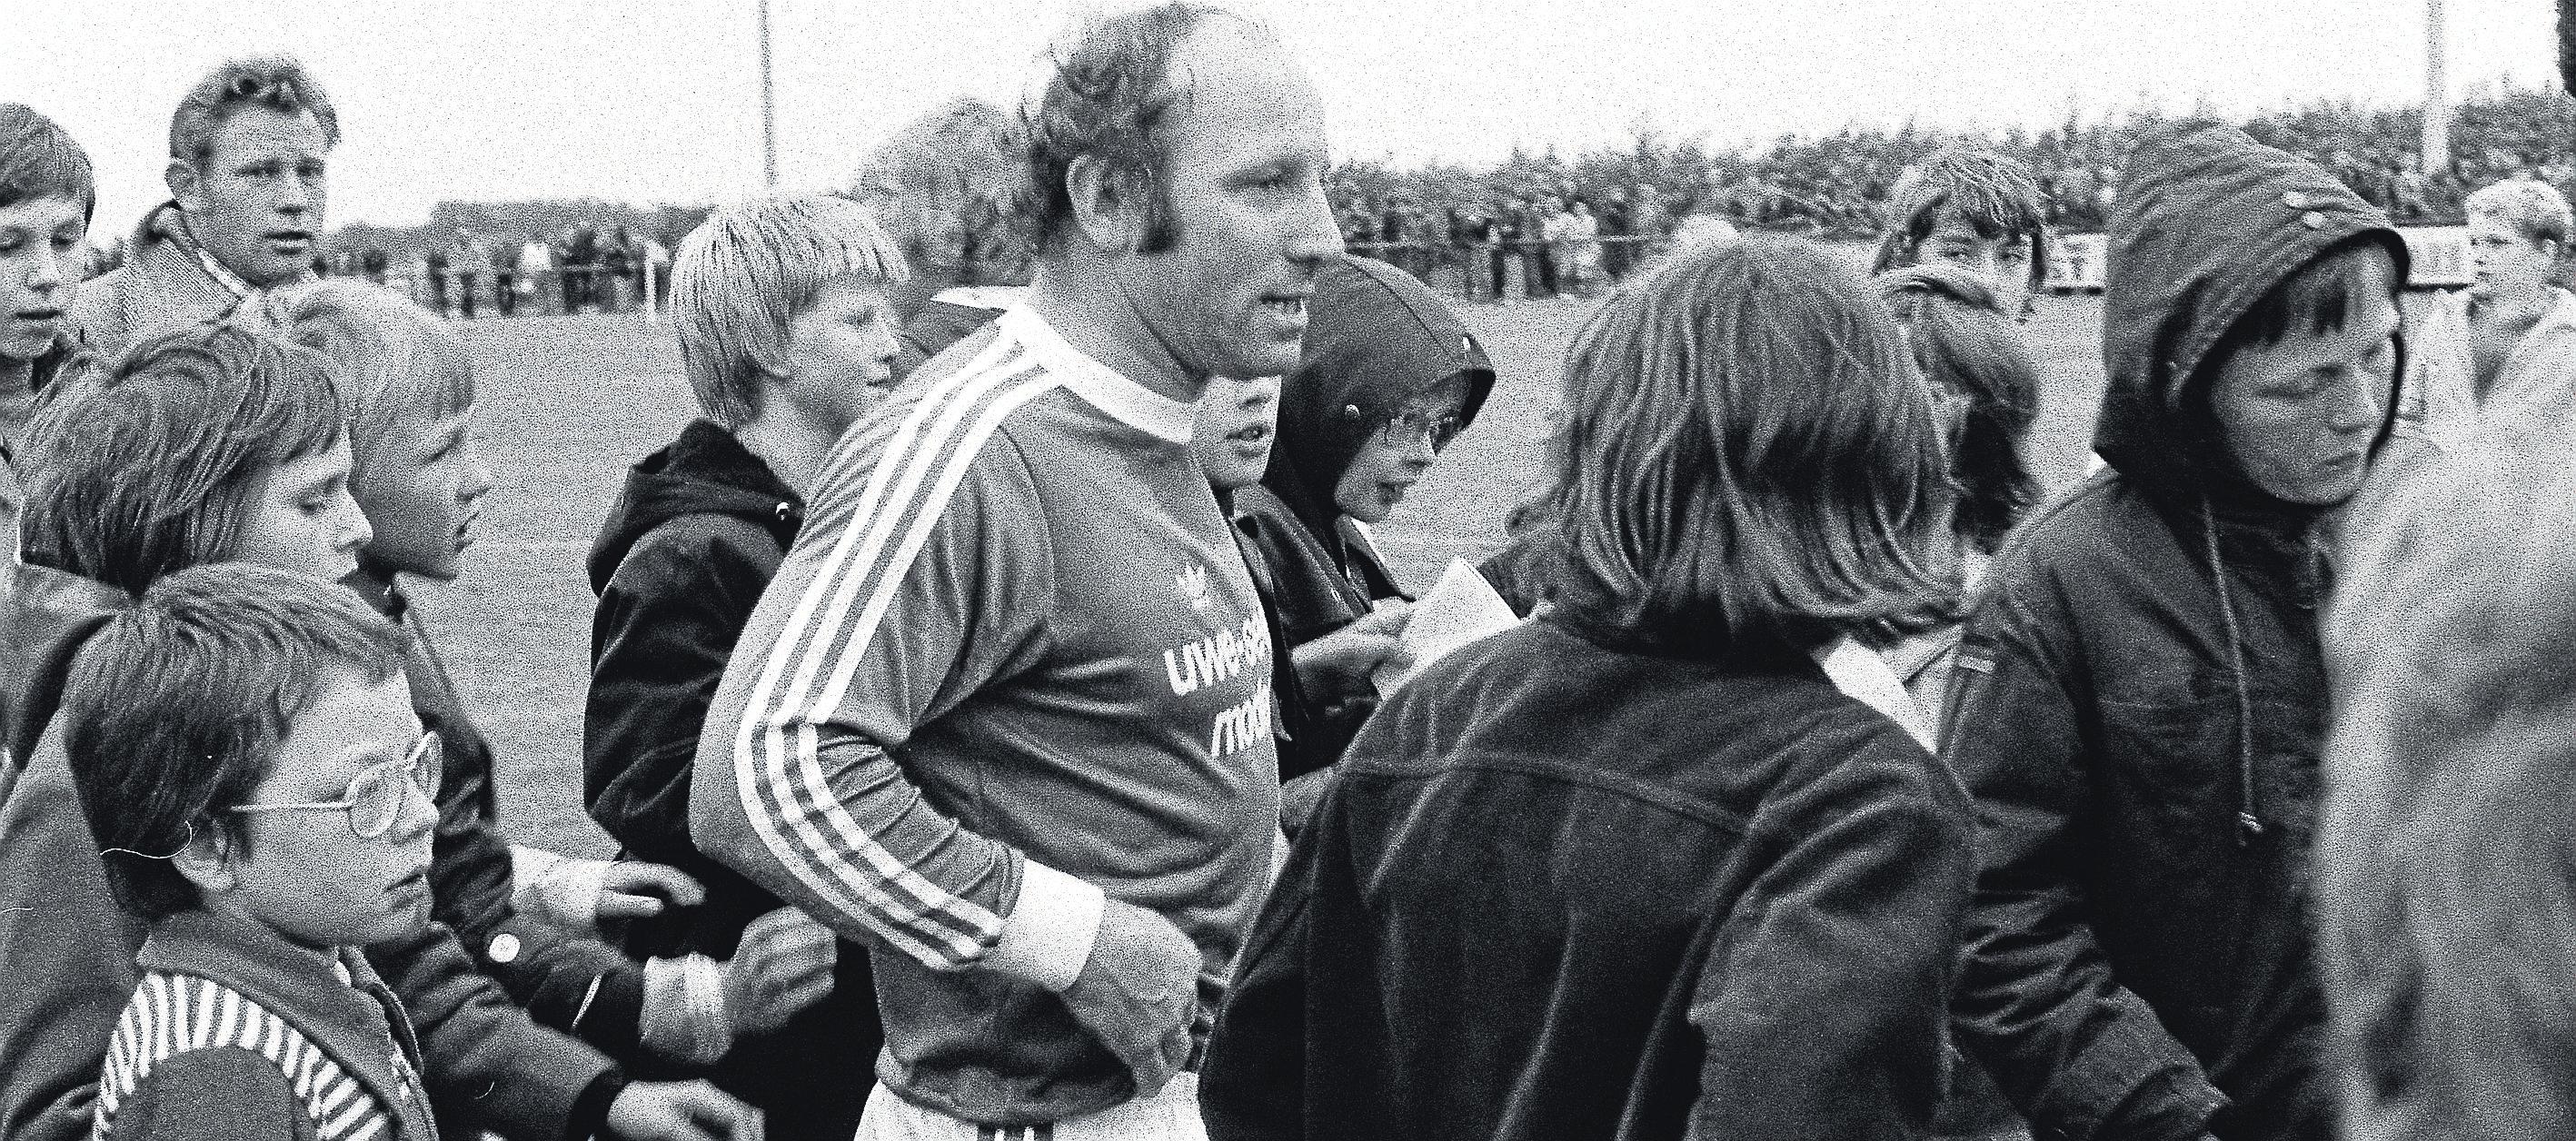 Stadioneinweihung 1976 mit sportlicher Prominenz: Uwe Seeler wurde nach einem Einlagespiel von Fans umringt. Foto: HSV-Archiv